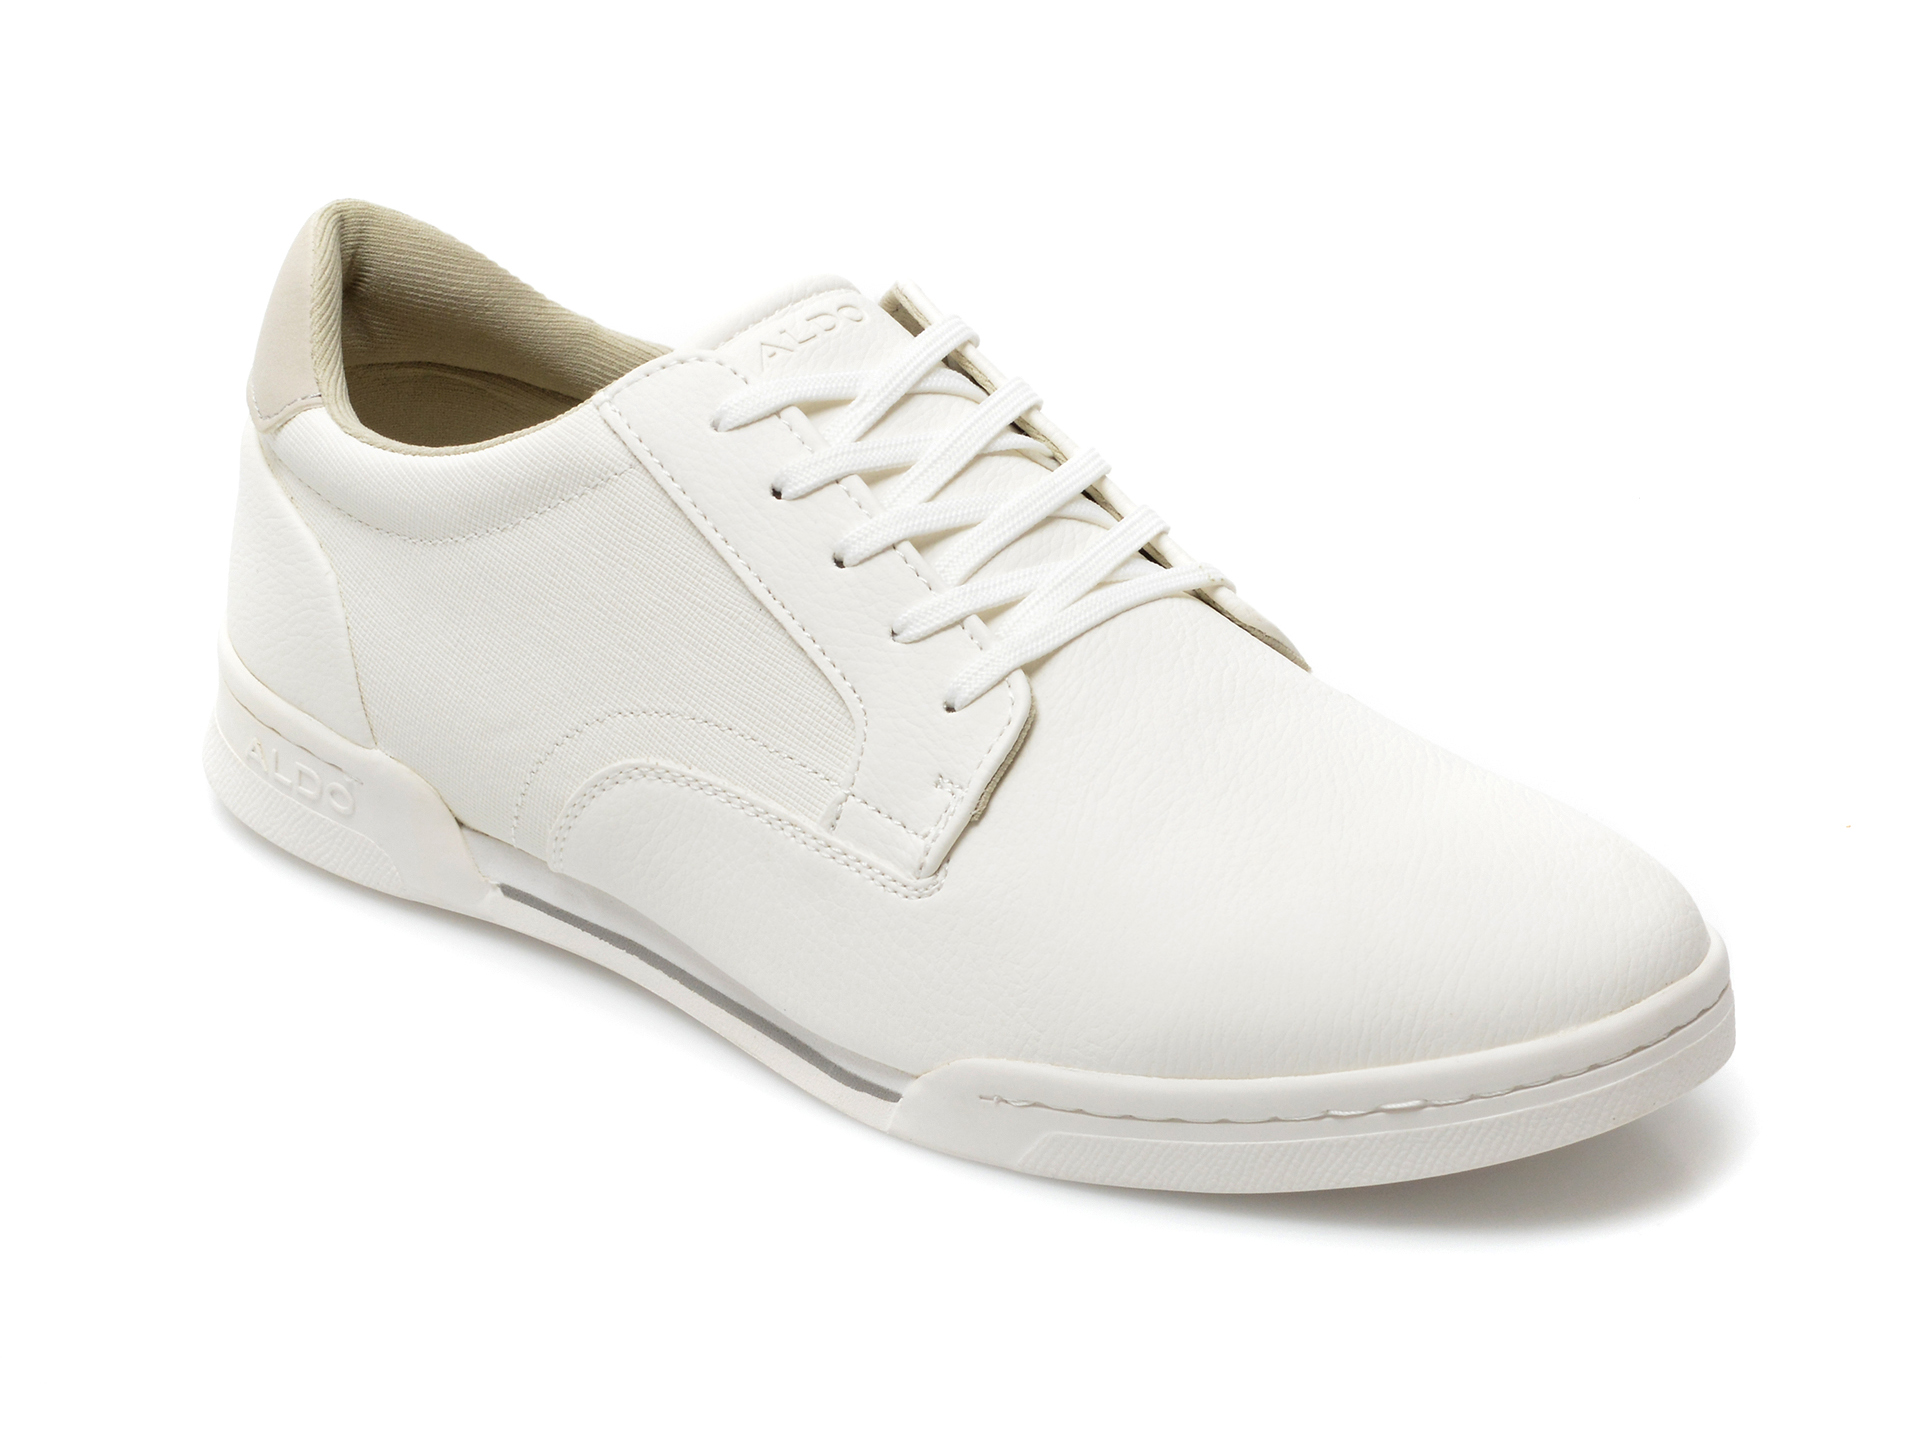 Pantofi sport ALDO albi, Fradolian100, din piele ecologica Aldo Aldo